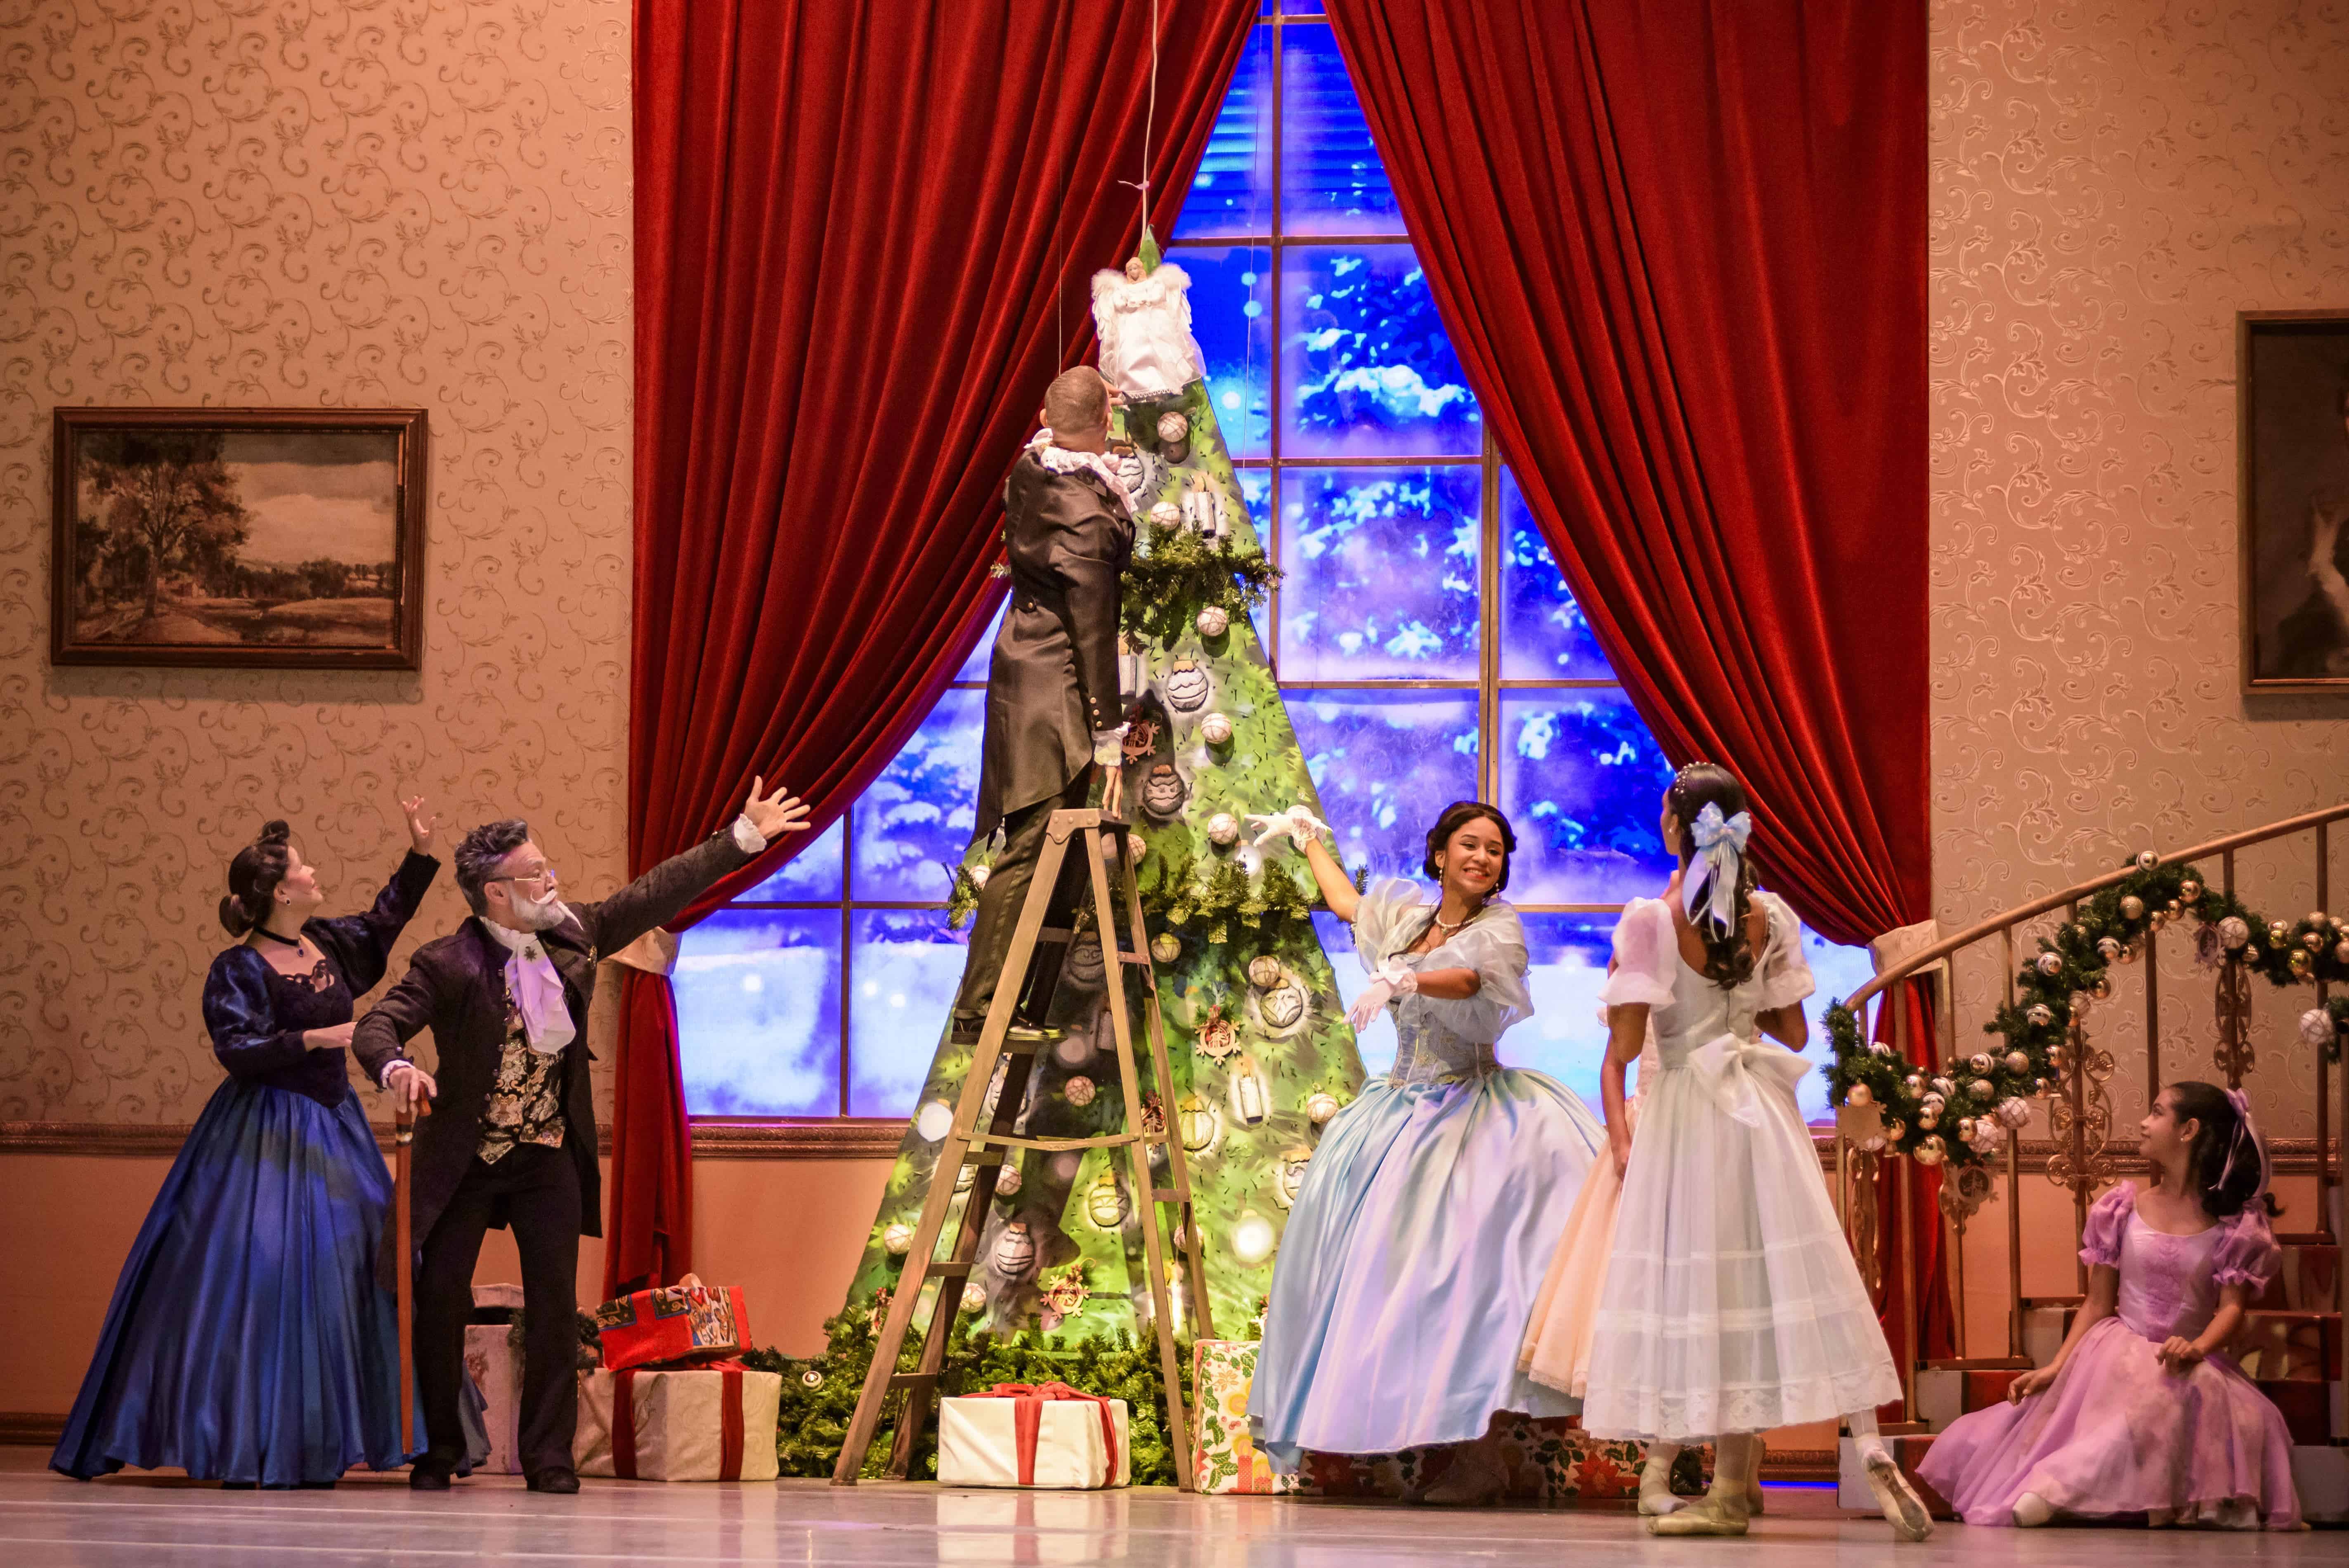 La familia se acerca para ver cuando colocan el Ángel de la navidad al árbolito.